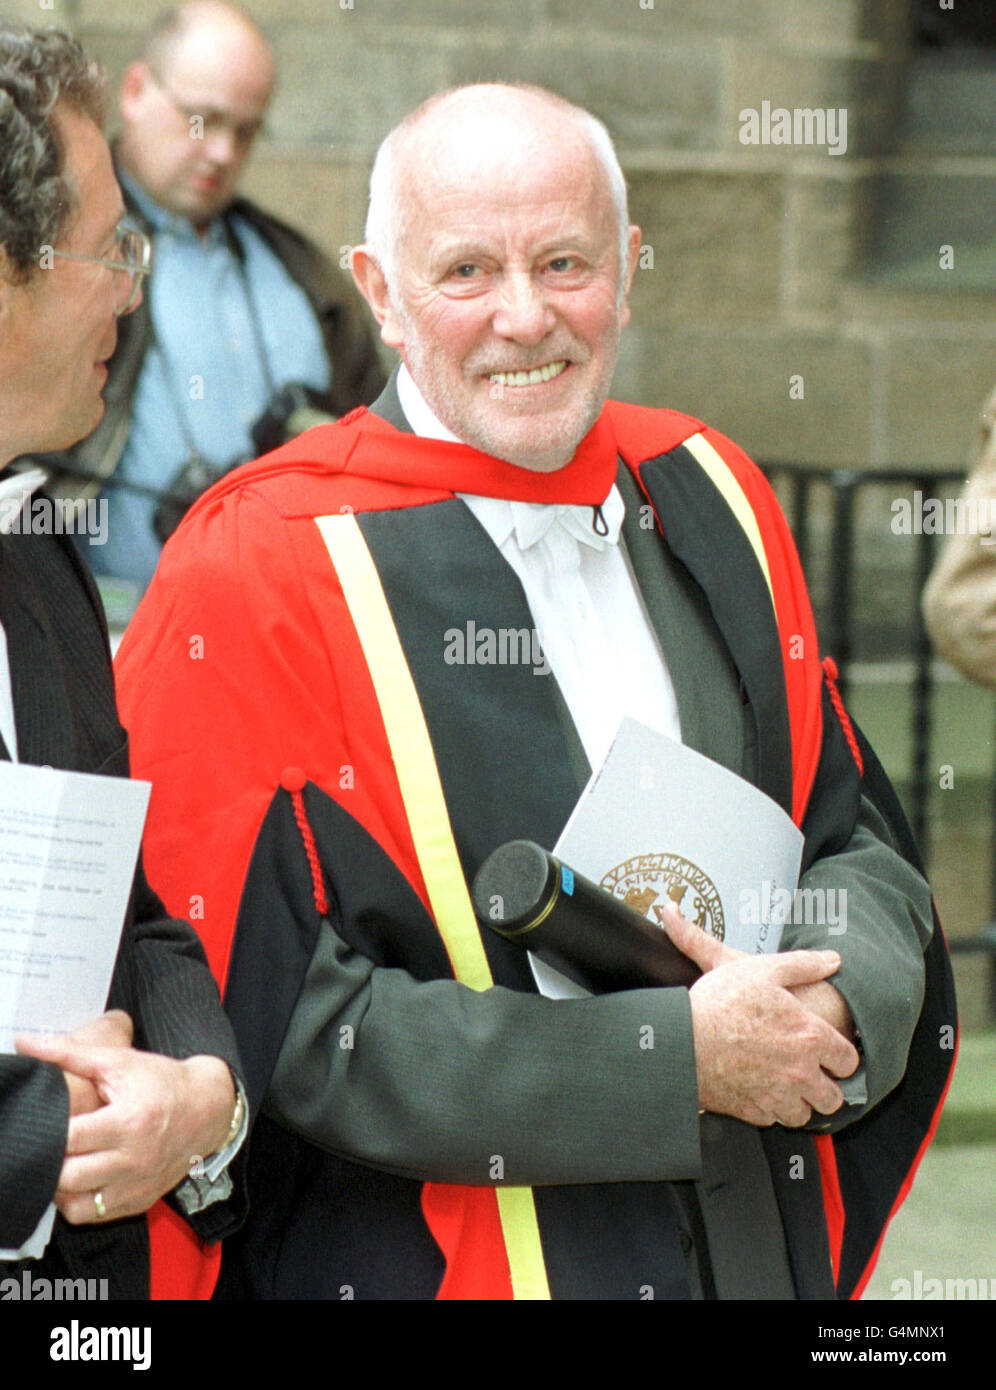 L'attore Richard Wilson, che interpreta Victor Meldrew in televisione con un piede nella tomba, ed è stato precedentemente Rettore dell'Università di Glasgow, dopo una cerimonia all'università dove ha ricevuto una laurea onoraria di Dottore dell'Università, a Glasgow. Foto Stock